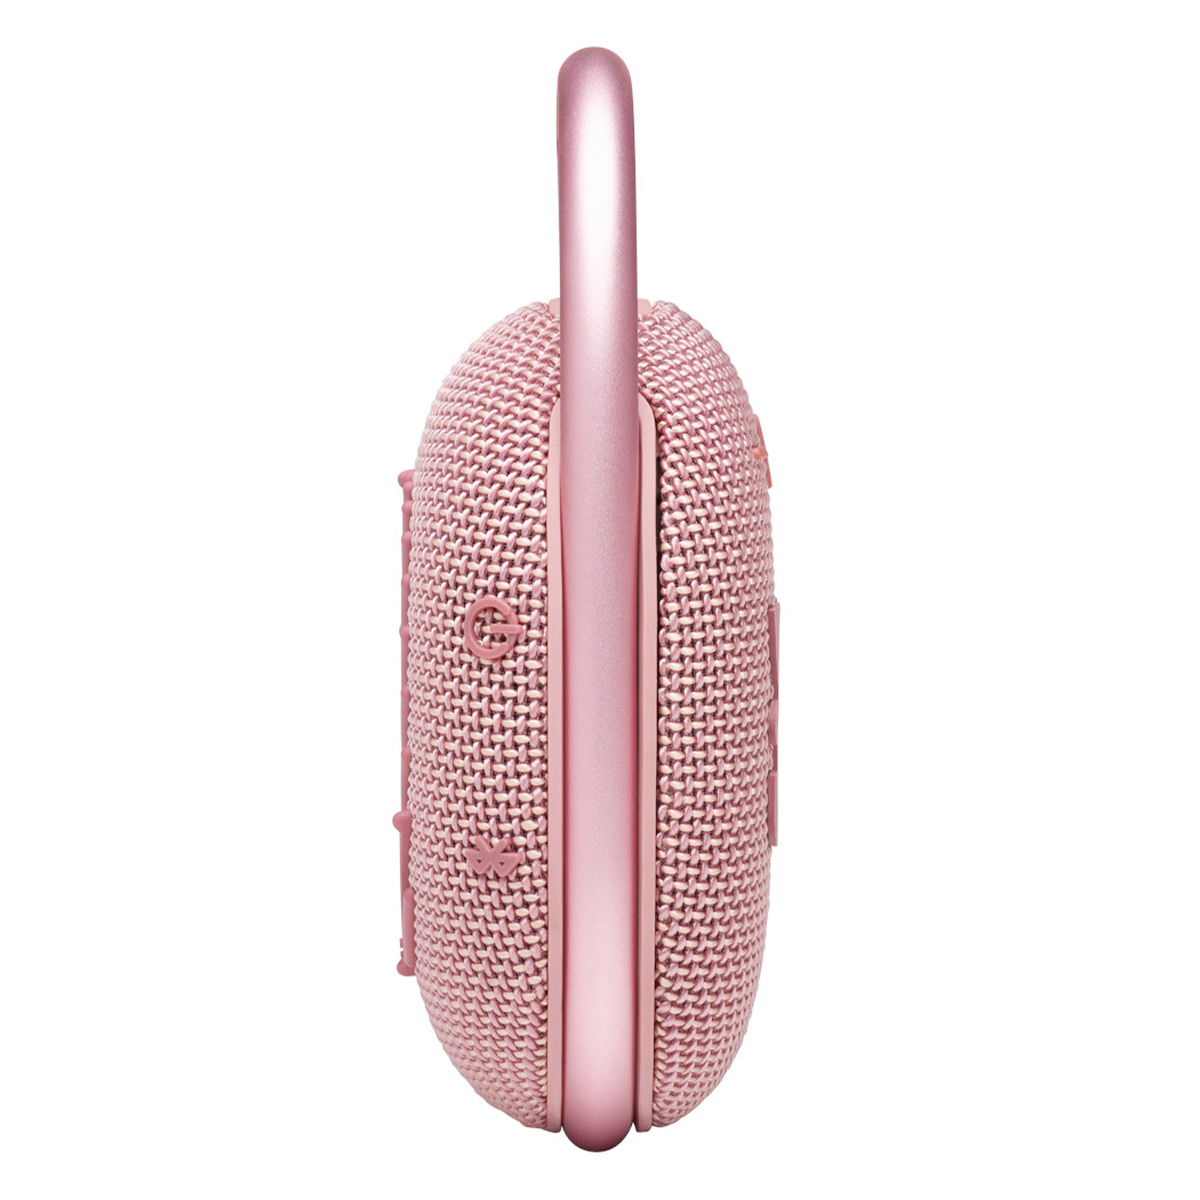 JBL Clip 4 Portable Bluetooth Waterproof Speaker (Pink) - image 5 of 8